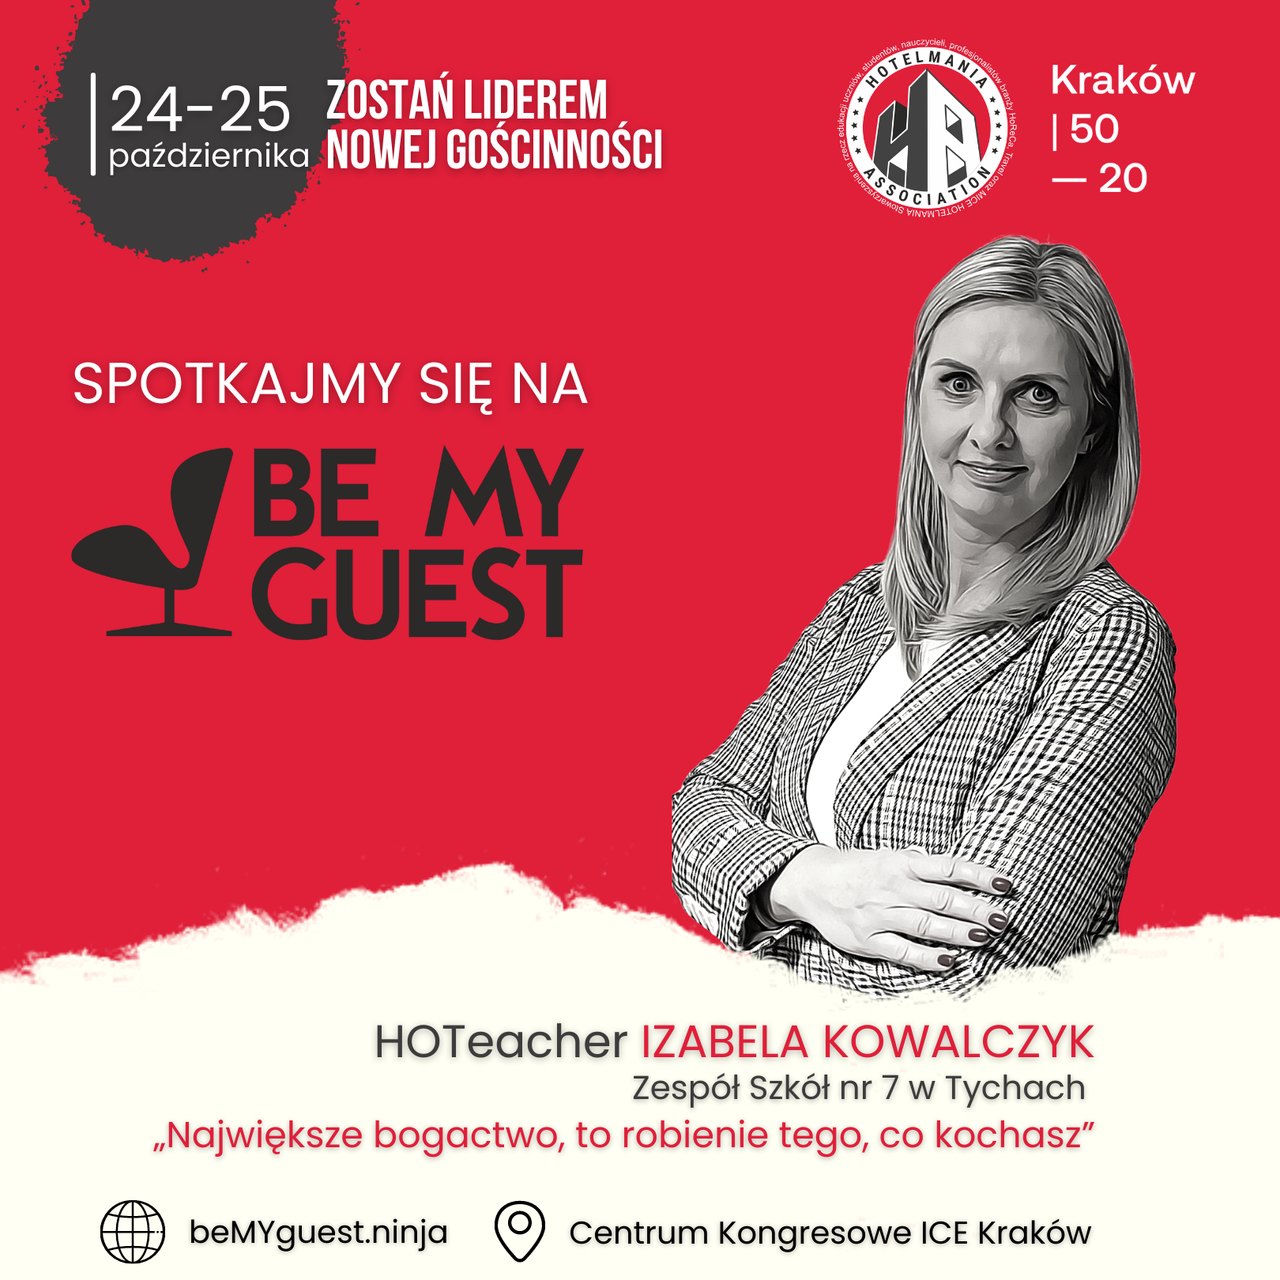 Be my Guest hoteacher Izabela Kowalczyk